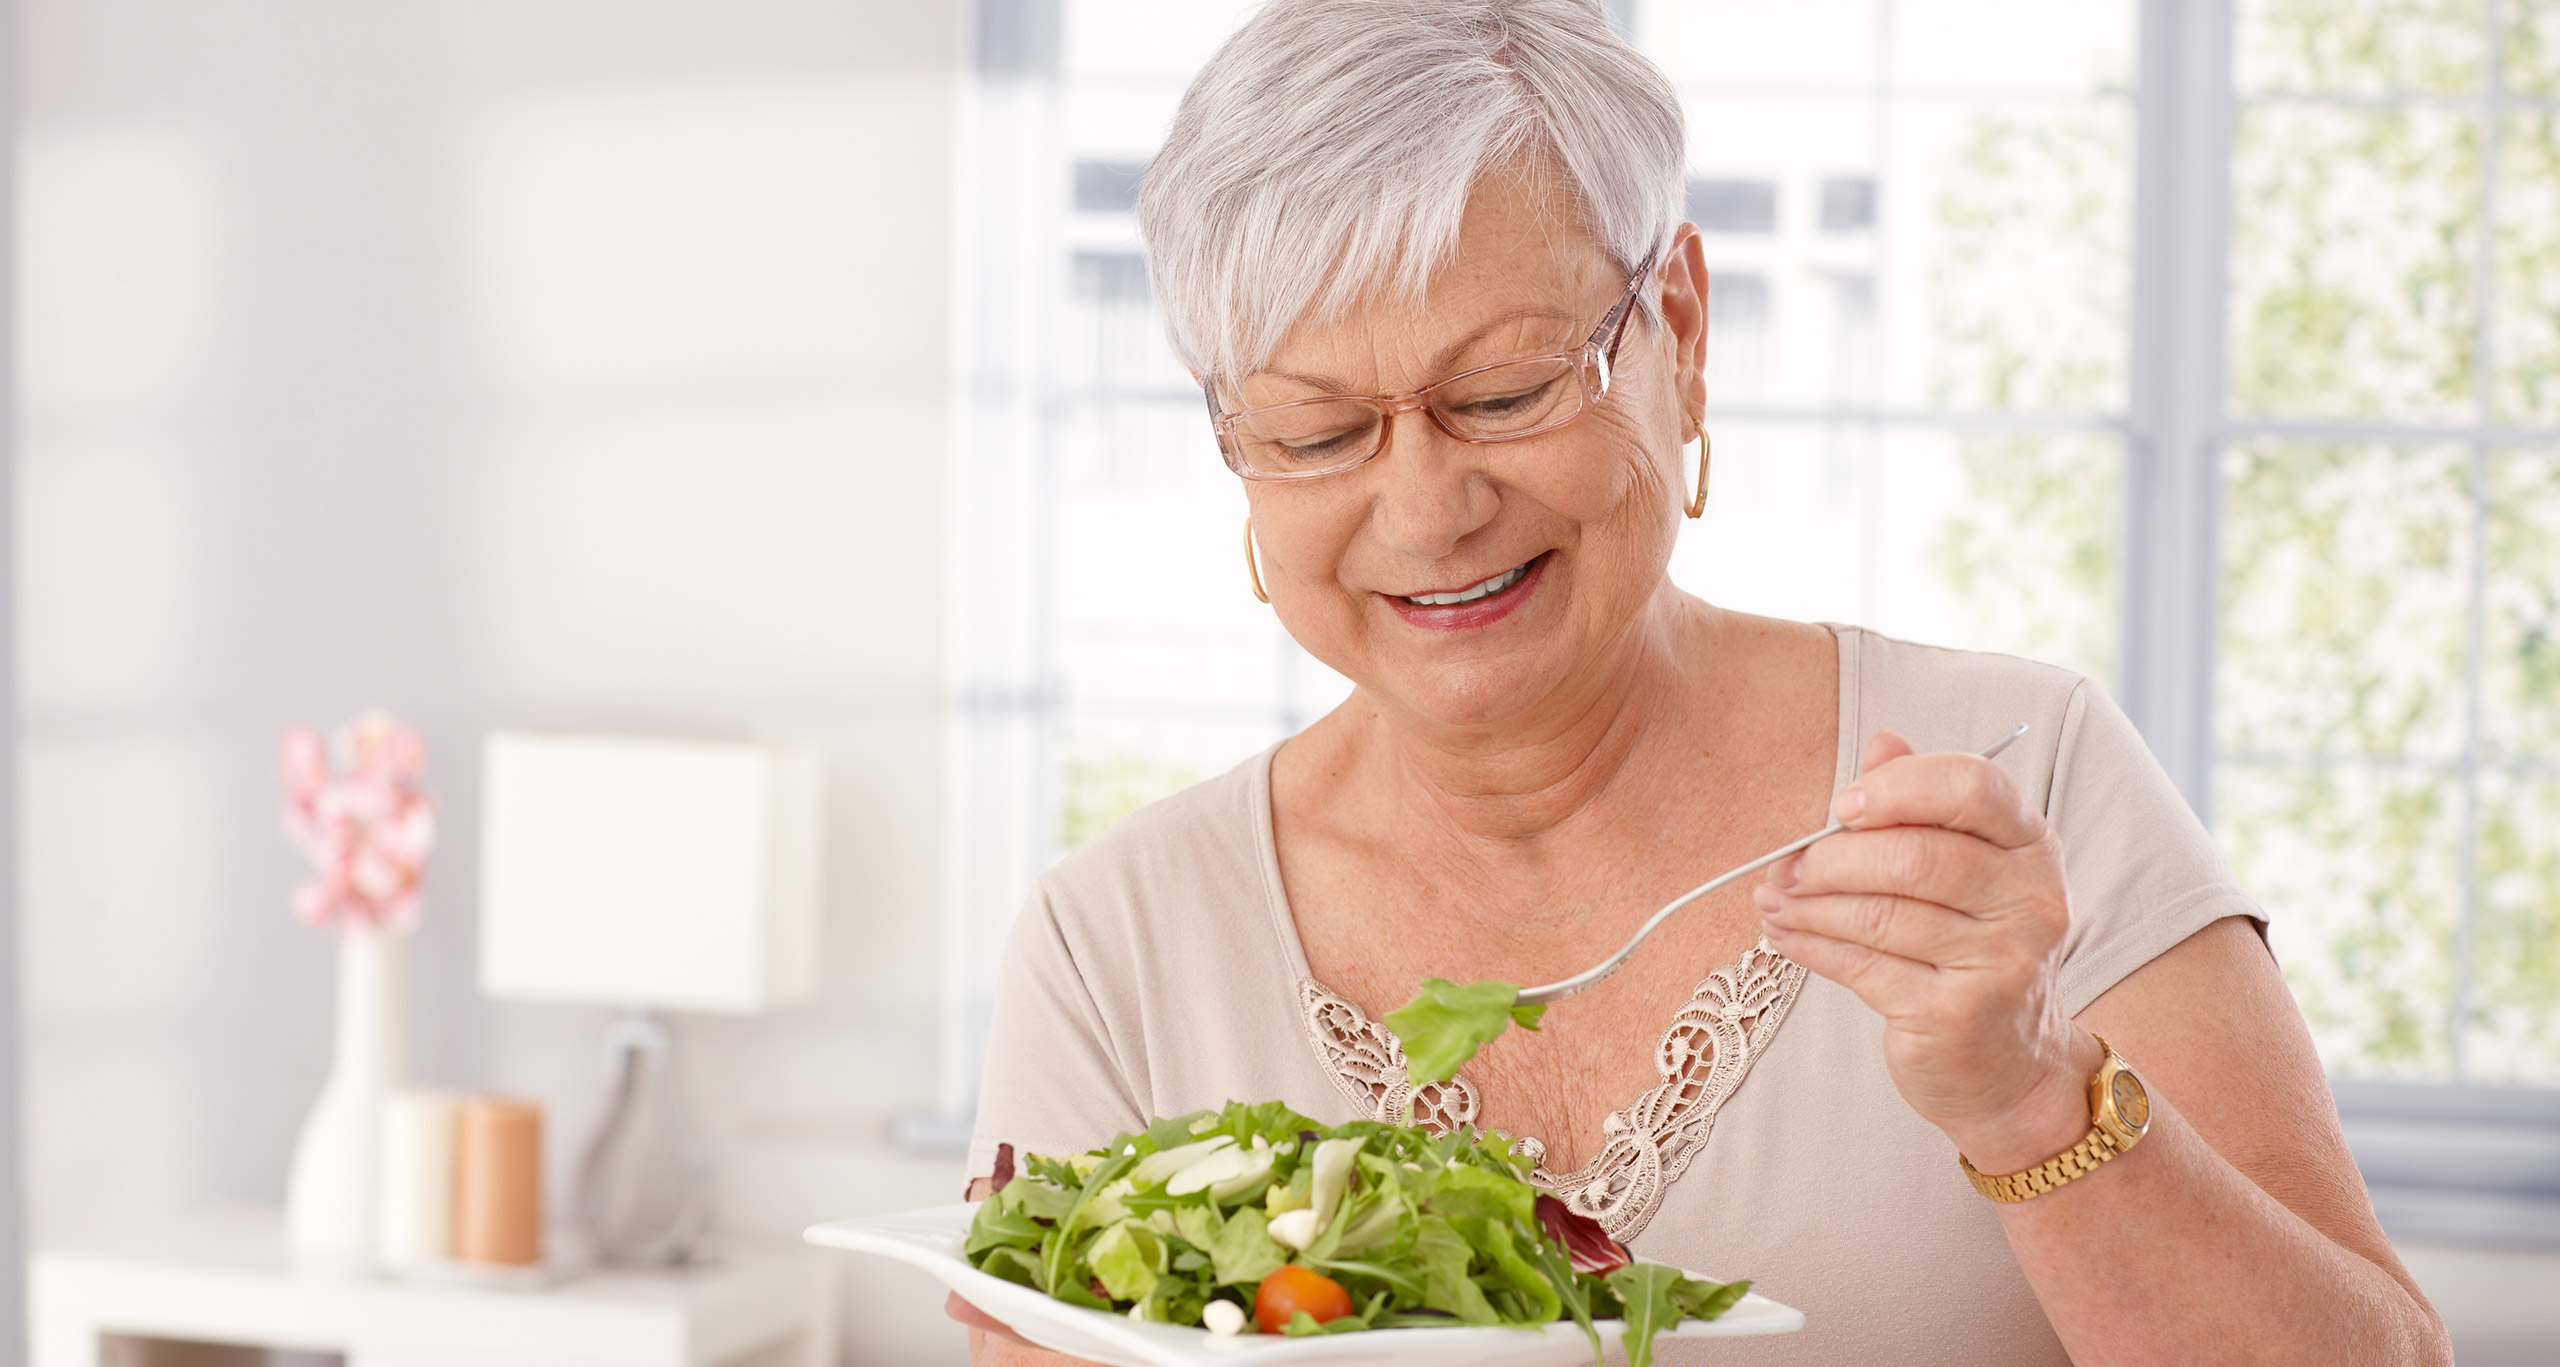 A woman enjoys a healthy salad